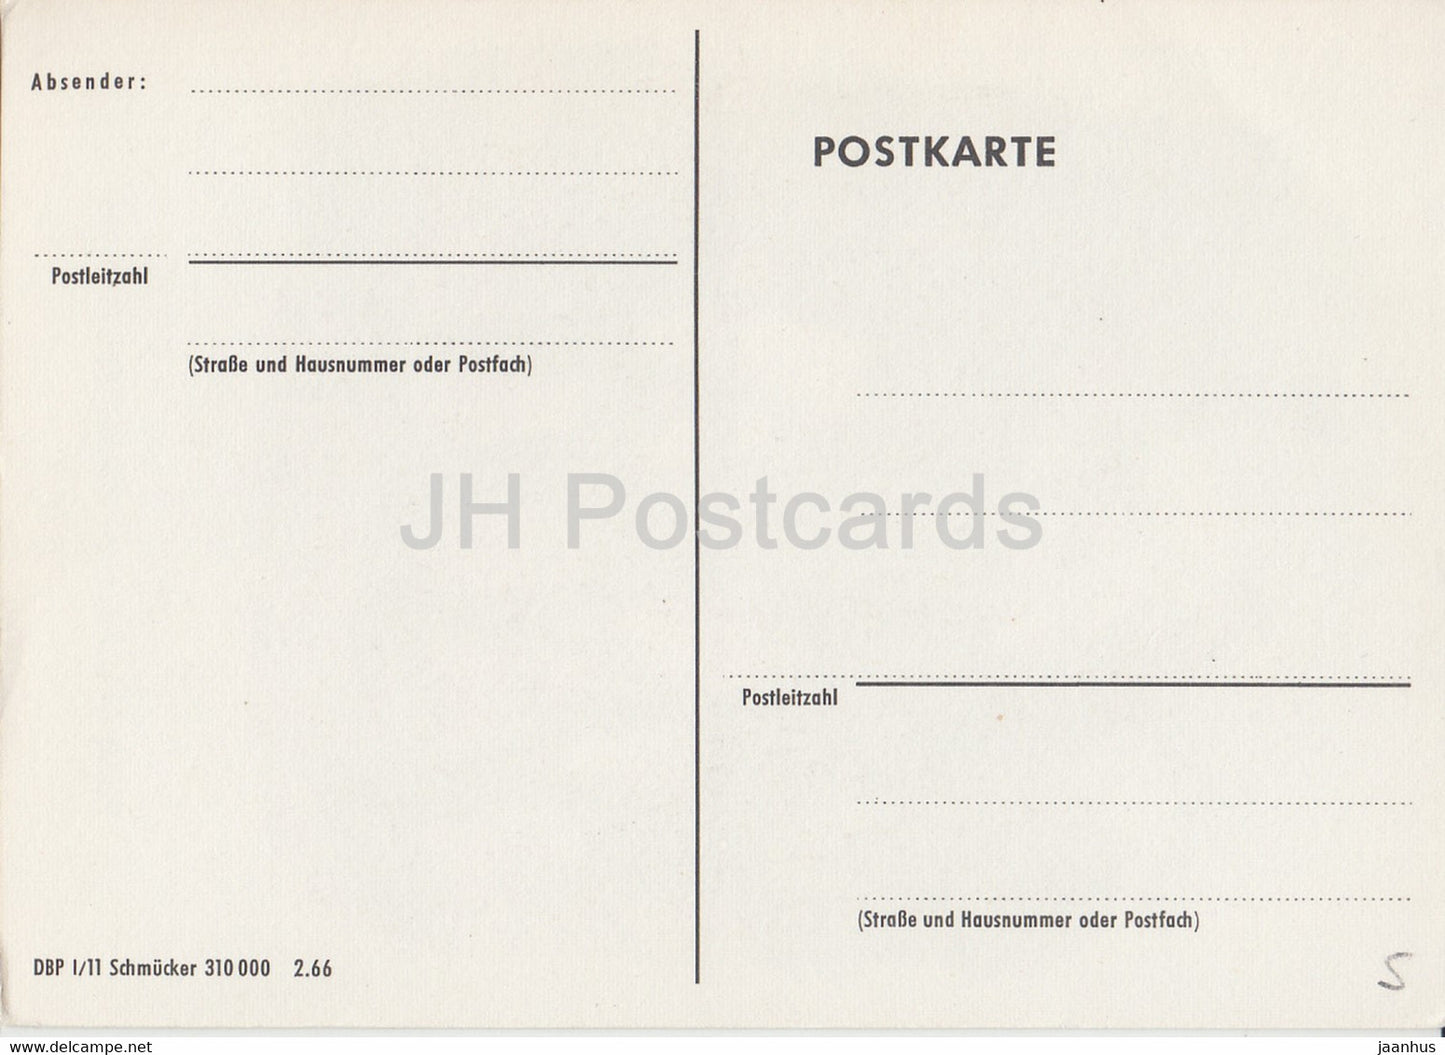 Postillione der Königlich Bayerischen Post - Postboten - Postdienst - Deutschland - unbenutzt